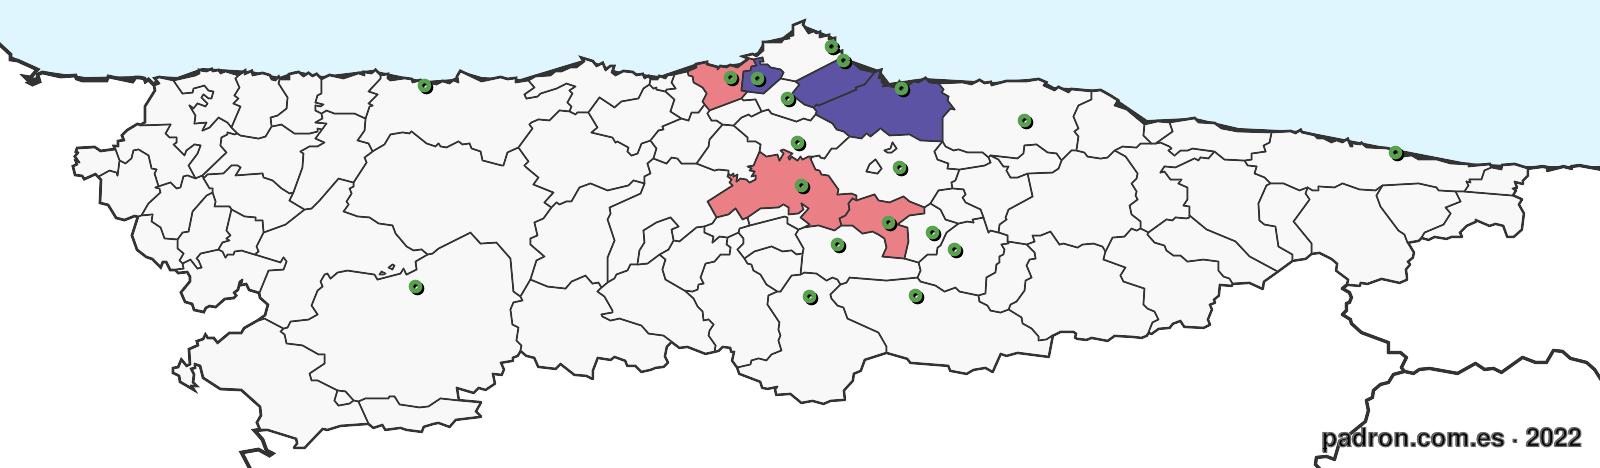 bosnioherzegovinos en asturias.